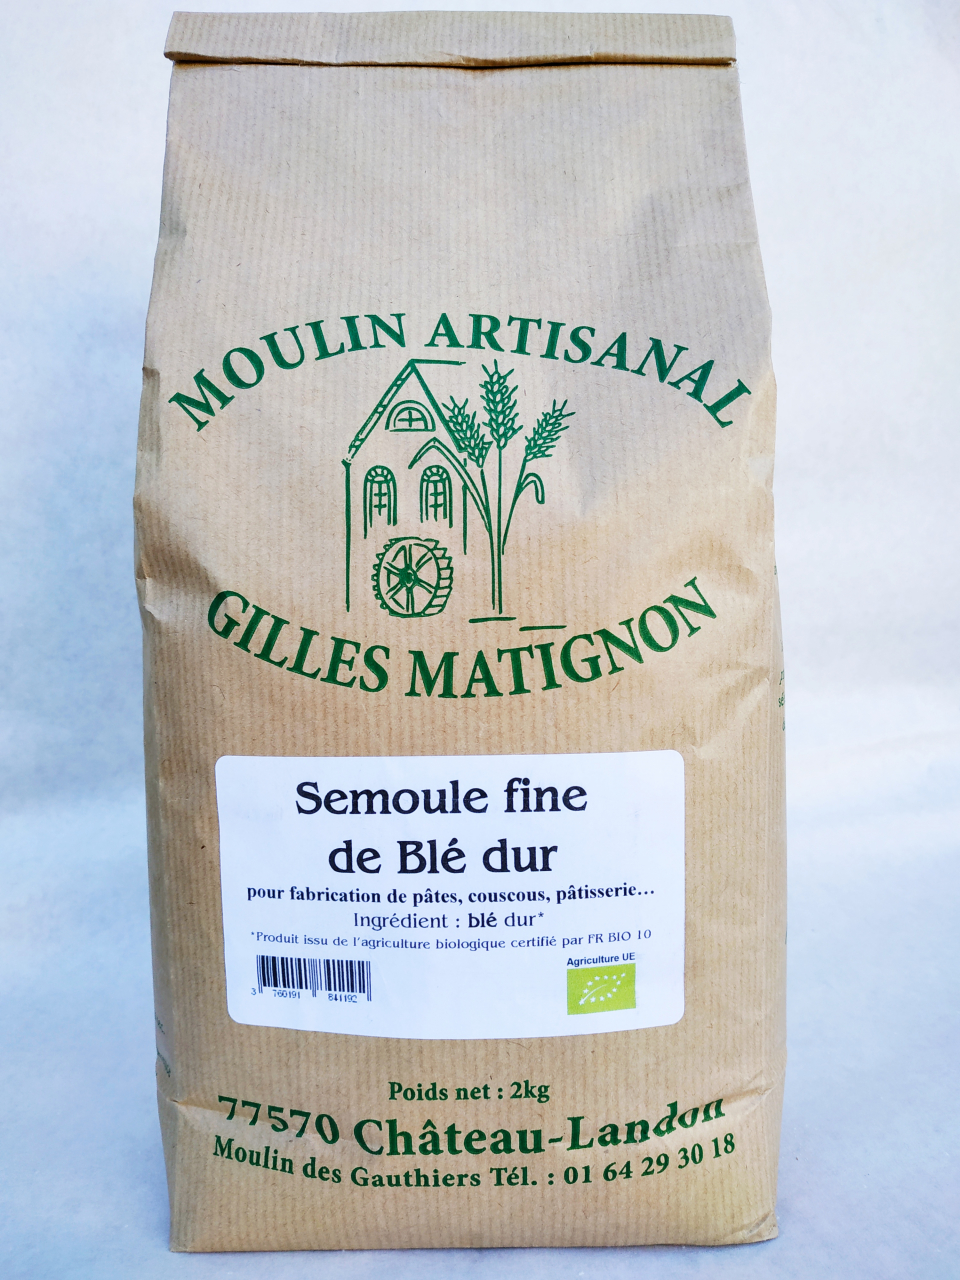 Semoule fine de blé dur bio par 2kg - 2 kg - Moulin Artisanal Gilles  Matignon 